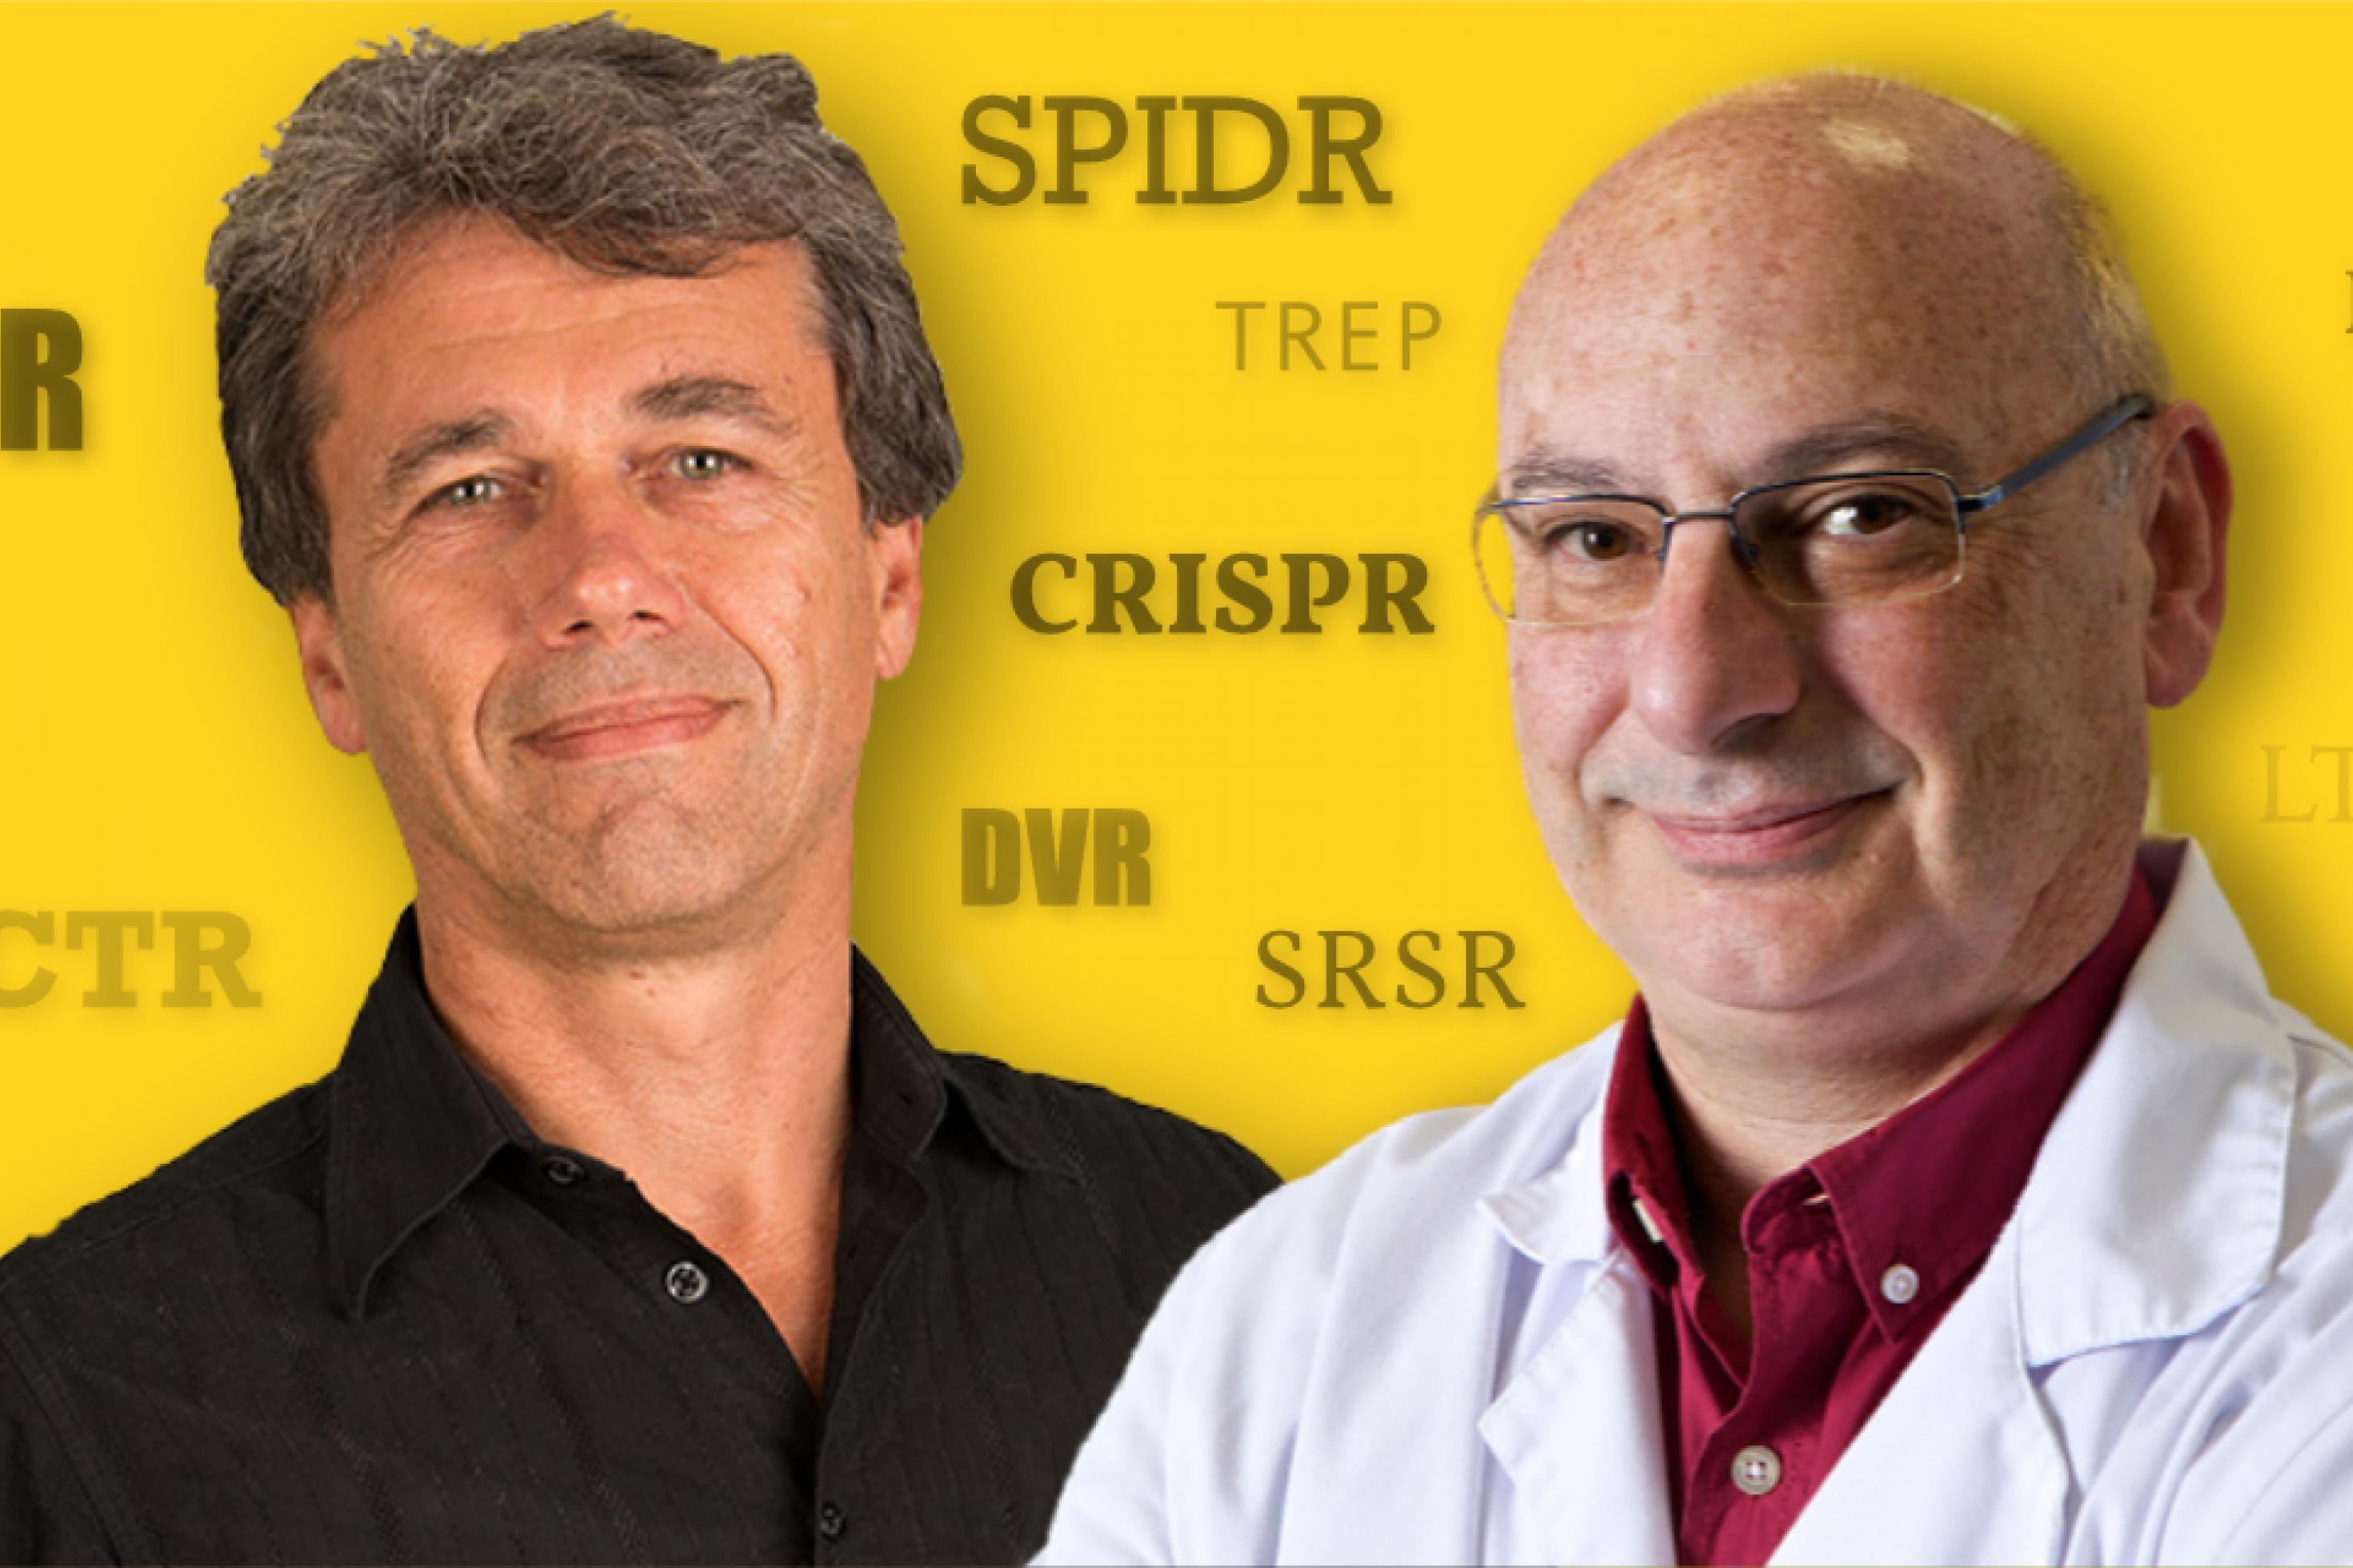 Bevor sich Ruud Jansen, im Bild links, und Francisco Mojica, im Bild rechts, auf einen Namen einigten, hatte CRISPR viele andere Namen, Abkürzungen wie TREP, SPIDR, DVR oder SRSR.